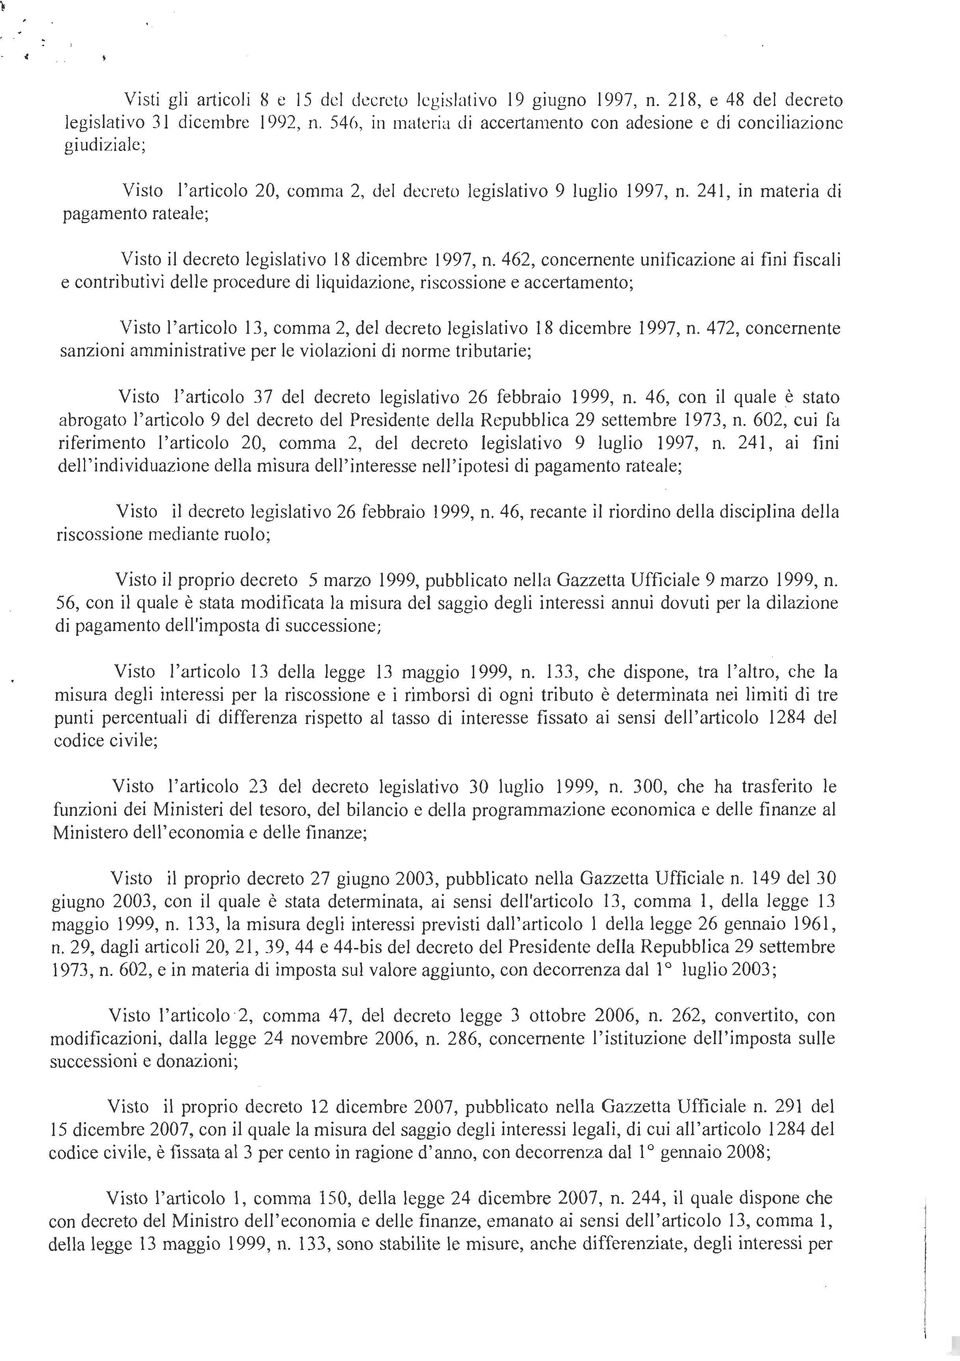 1997, n. 241, in materia di pagamento rateale; Visto il decreto legislativo 18 dicembrc 1997, n.